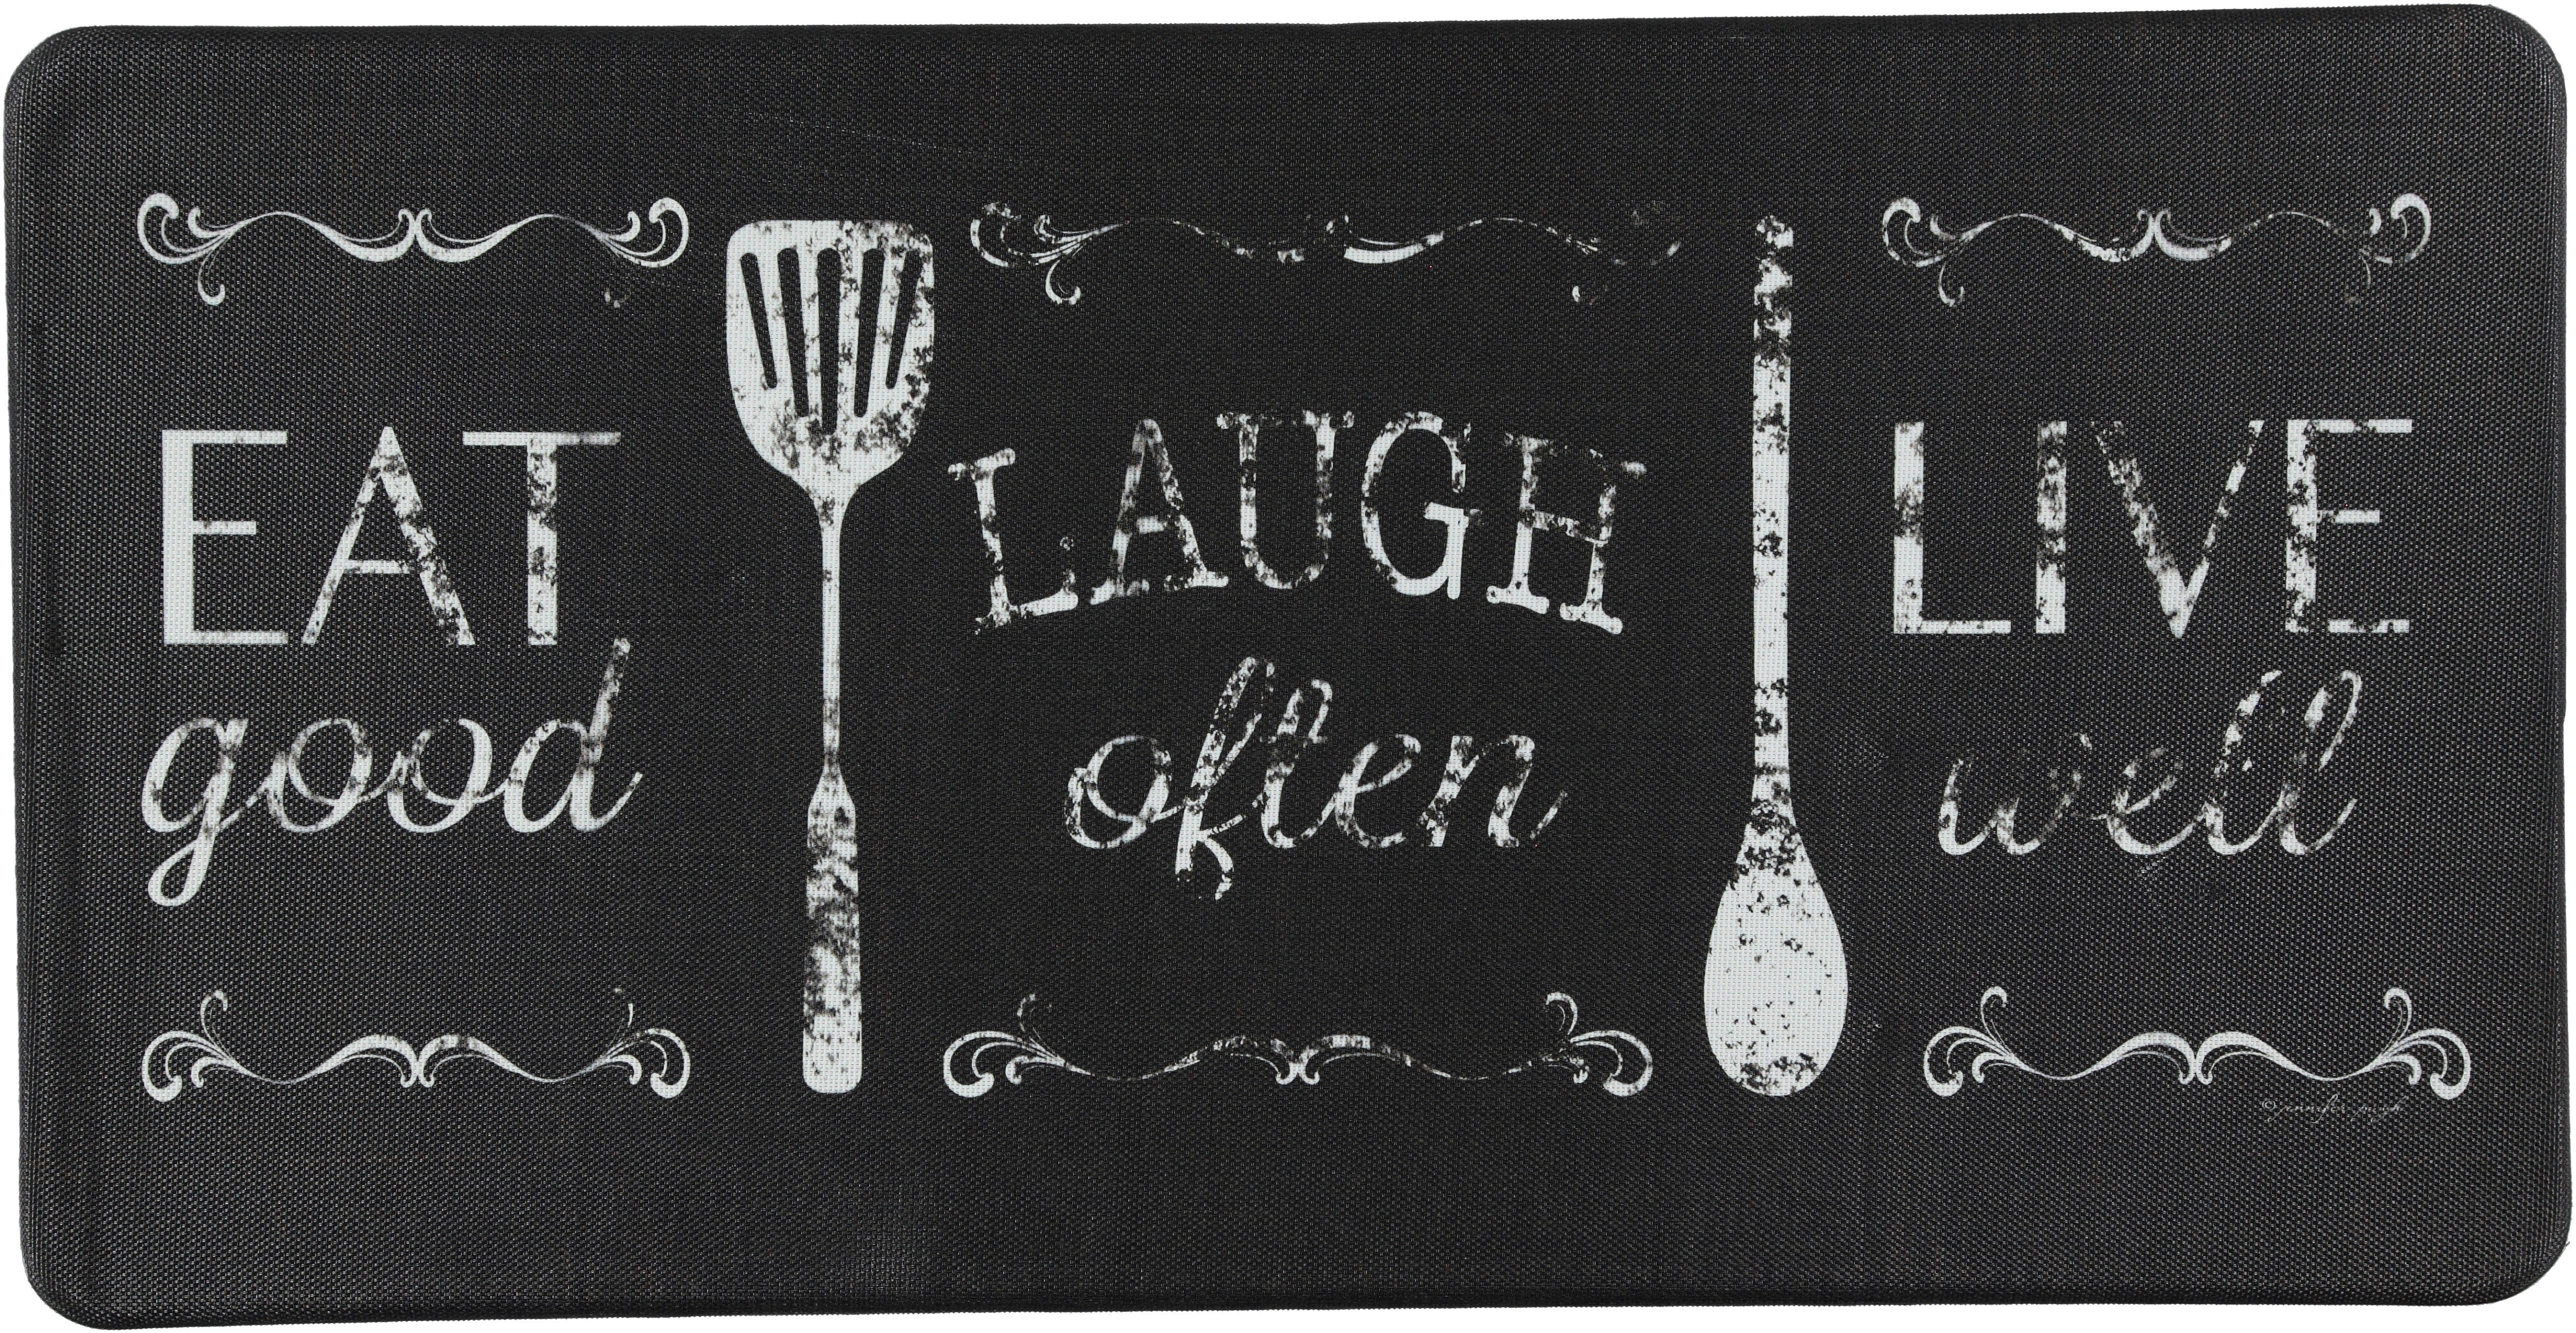 Oversized 20" x 39" Anti-Fatigue Floor Mats (Eat Laugh Live) - Kitchen Mats - J&V Textiles Premiere Home Goods